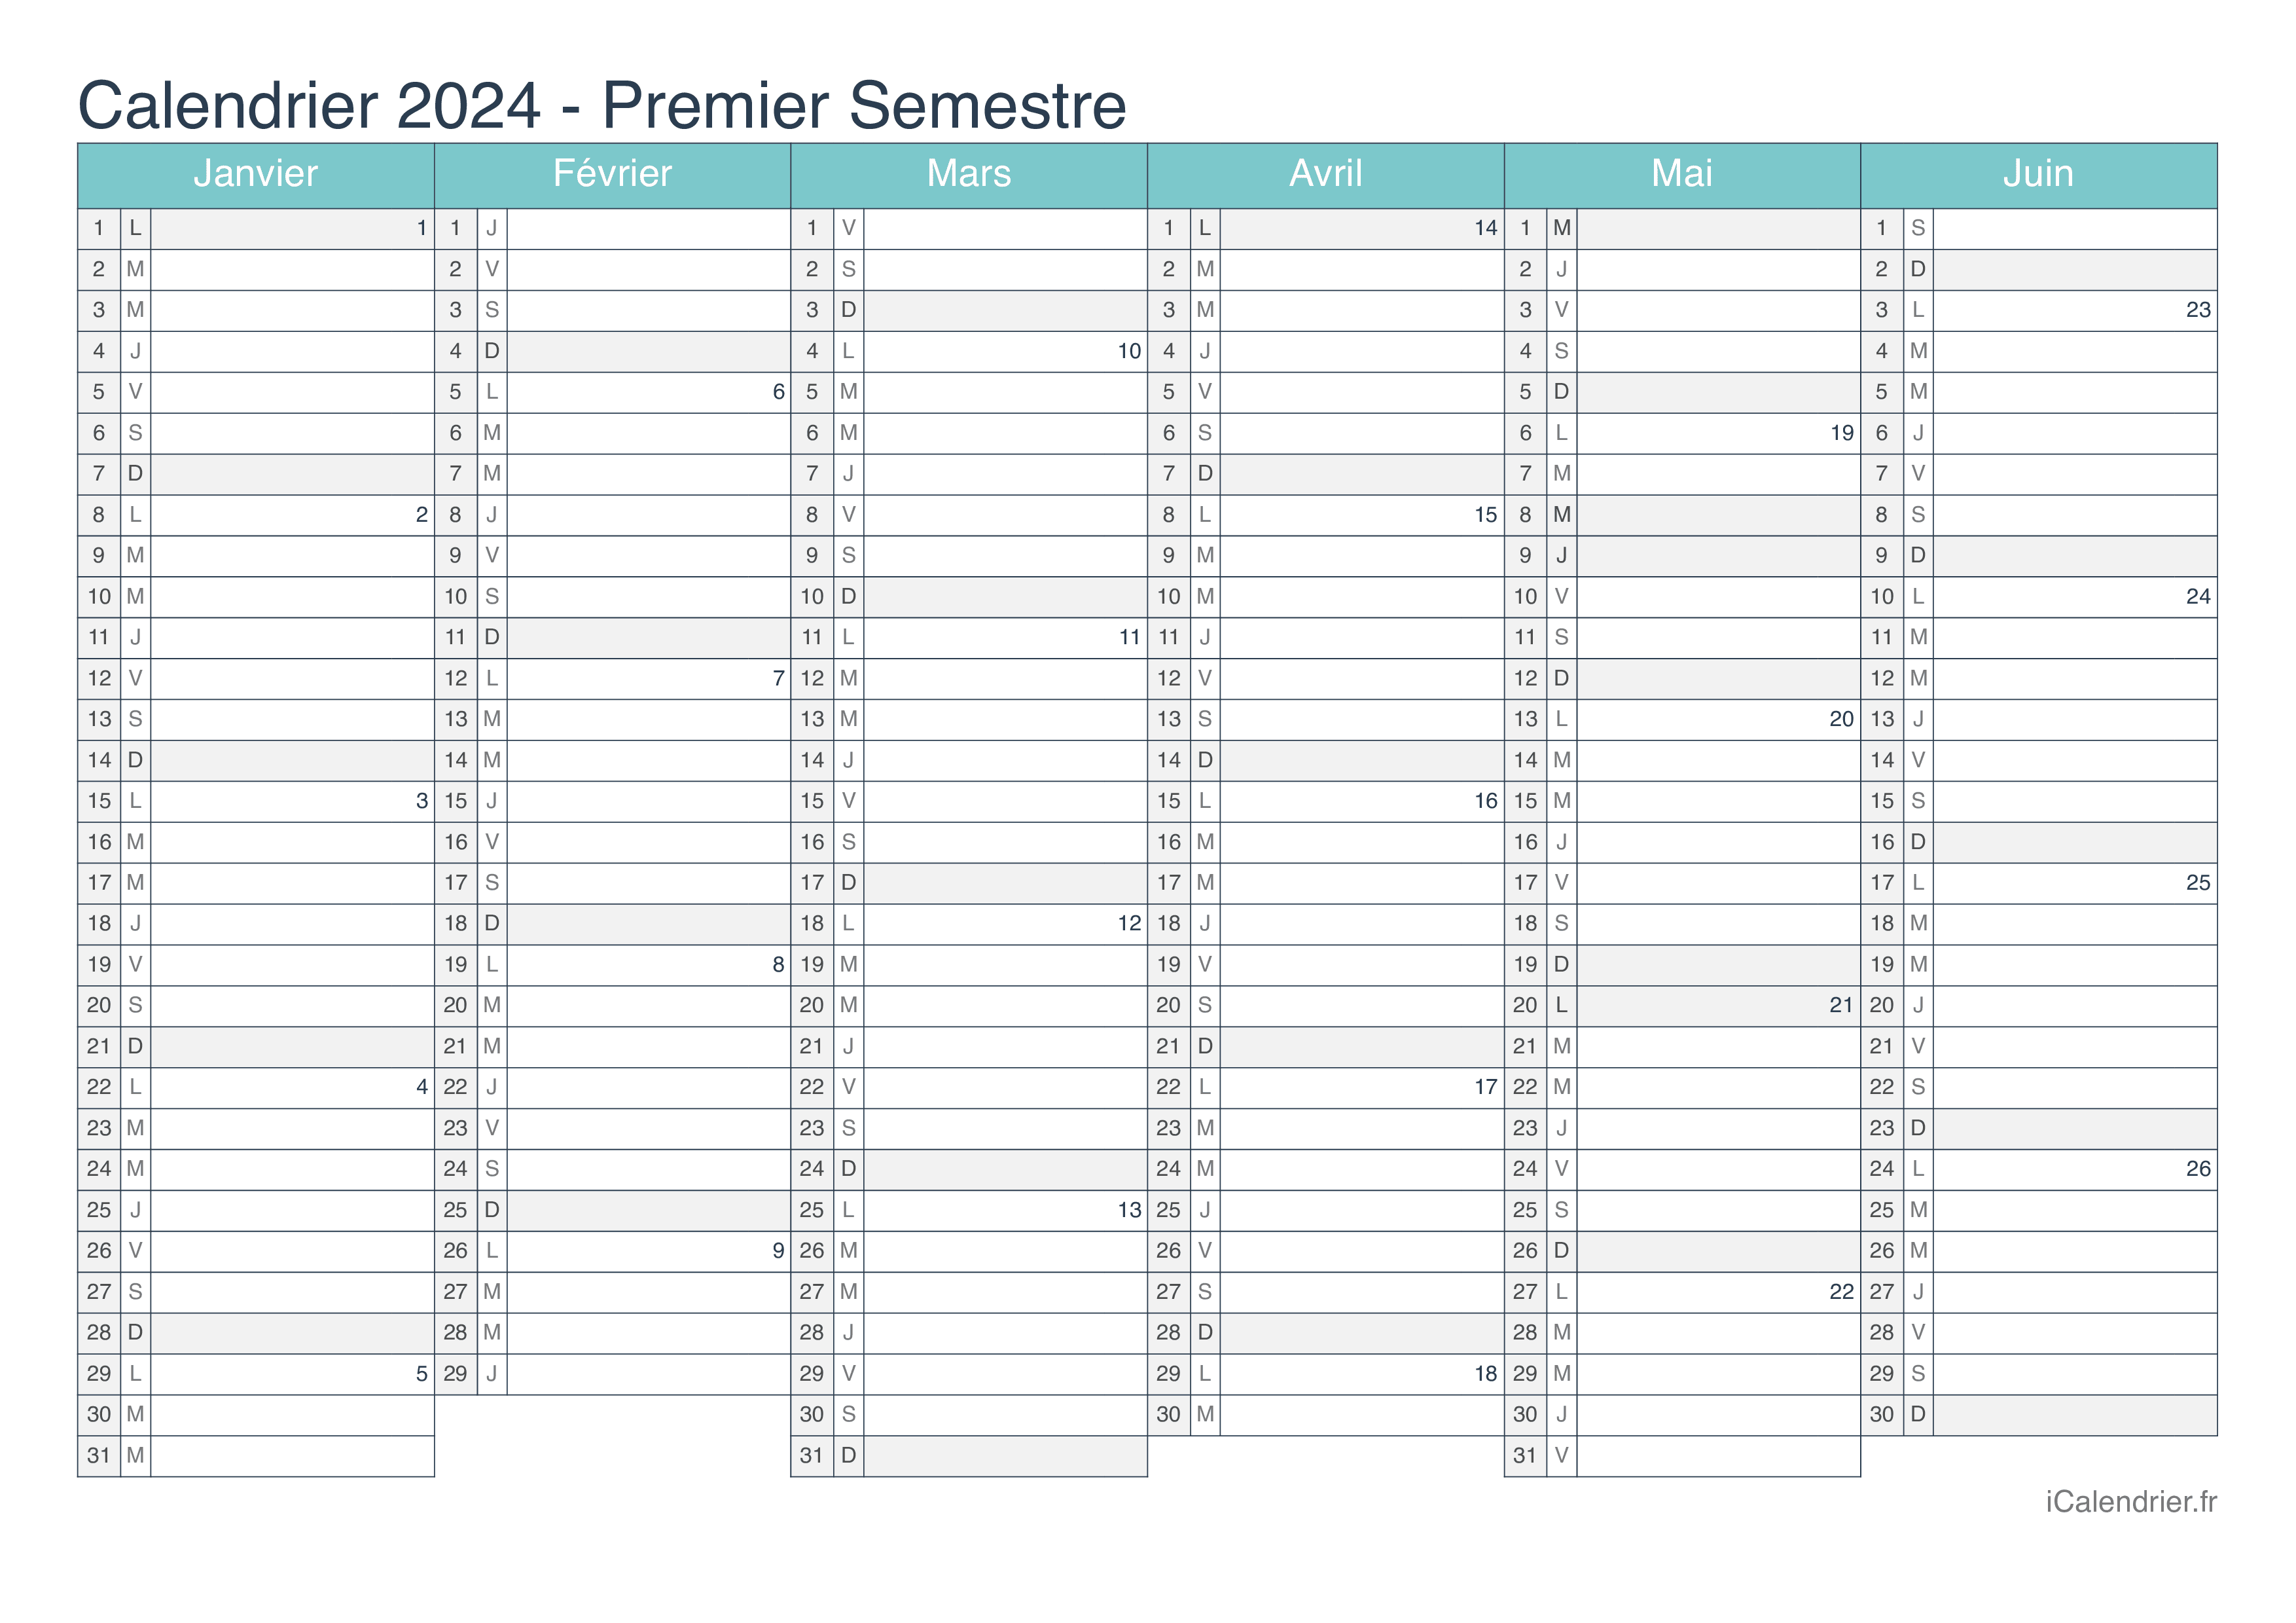 Calendrier par semestre avec numéros des semaines 2024 - Turquoise